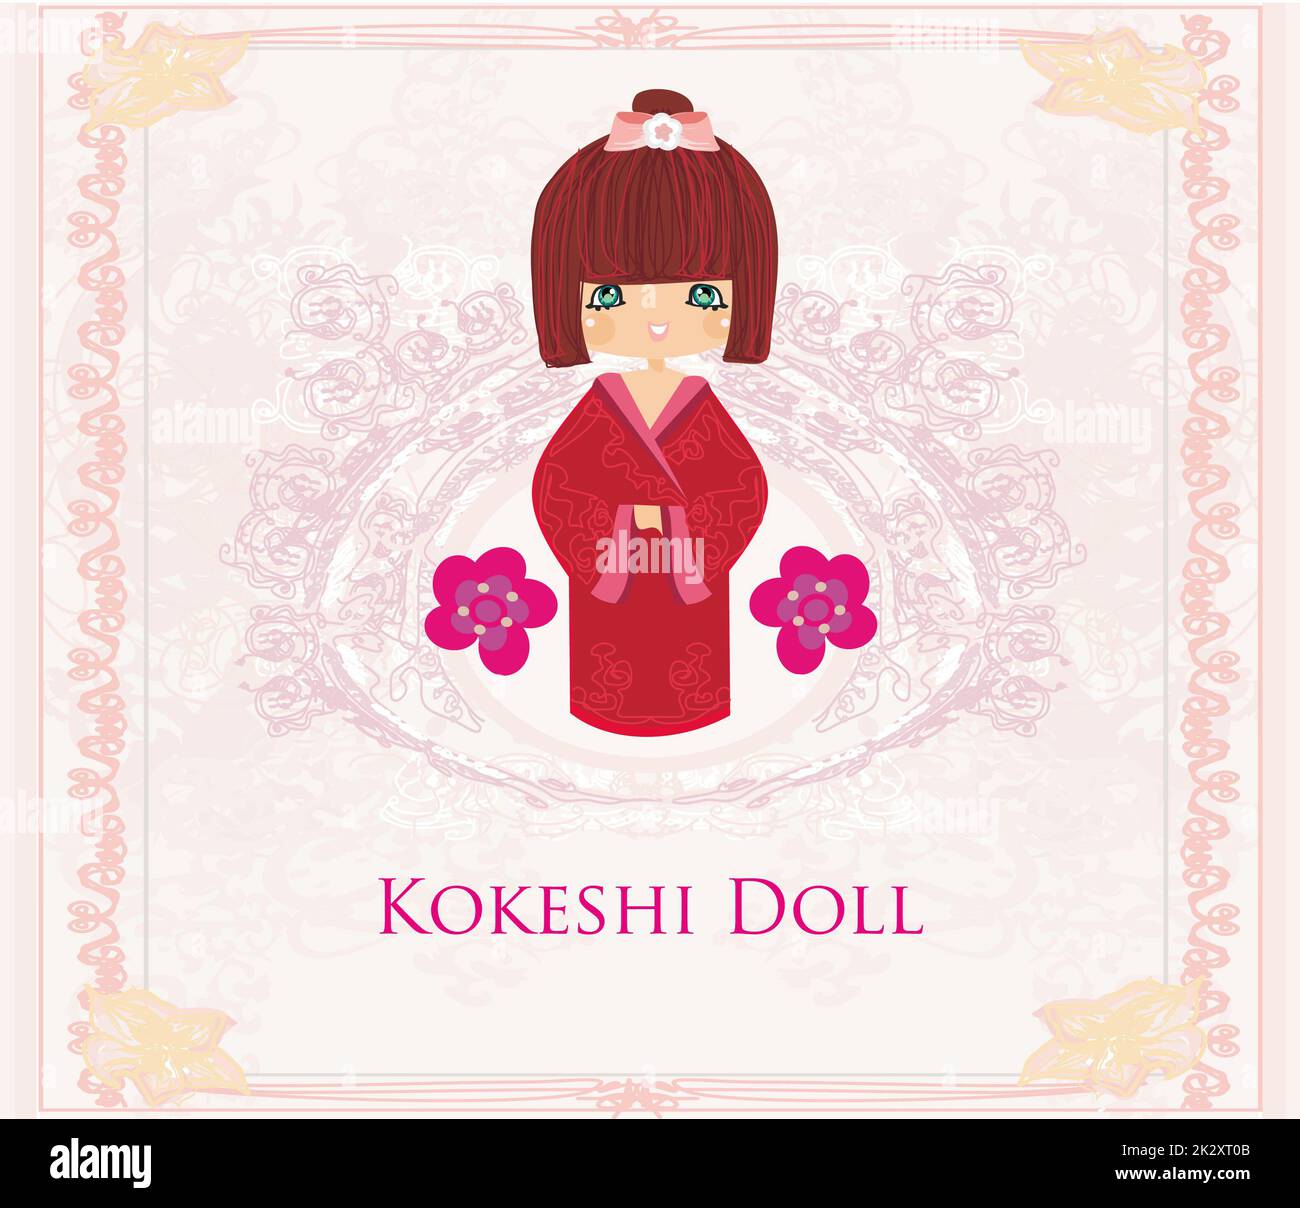 Poupée Kokeshi sur le fond rose avec ornement floral Banque D'Images